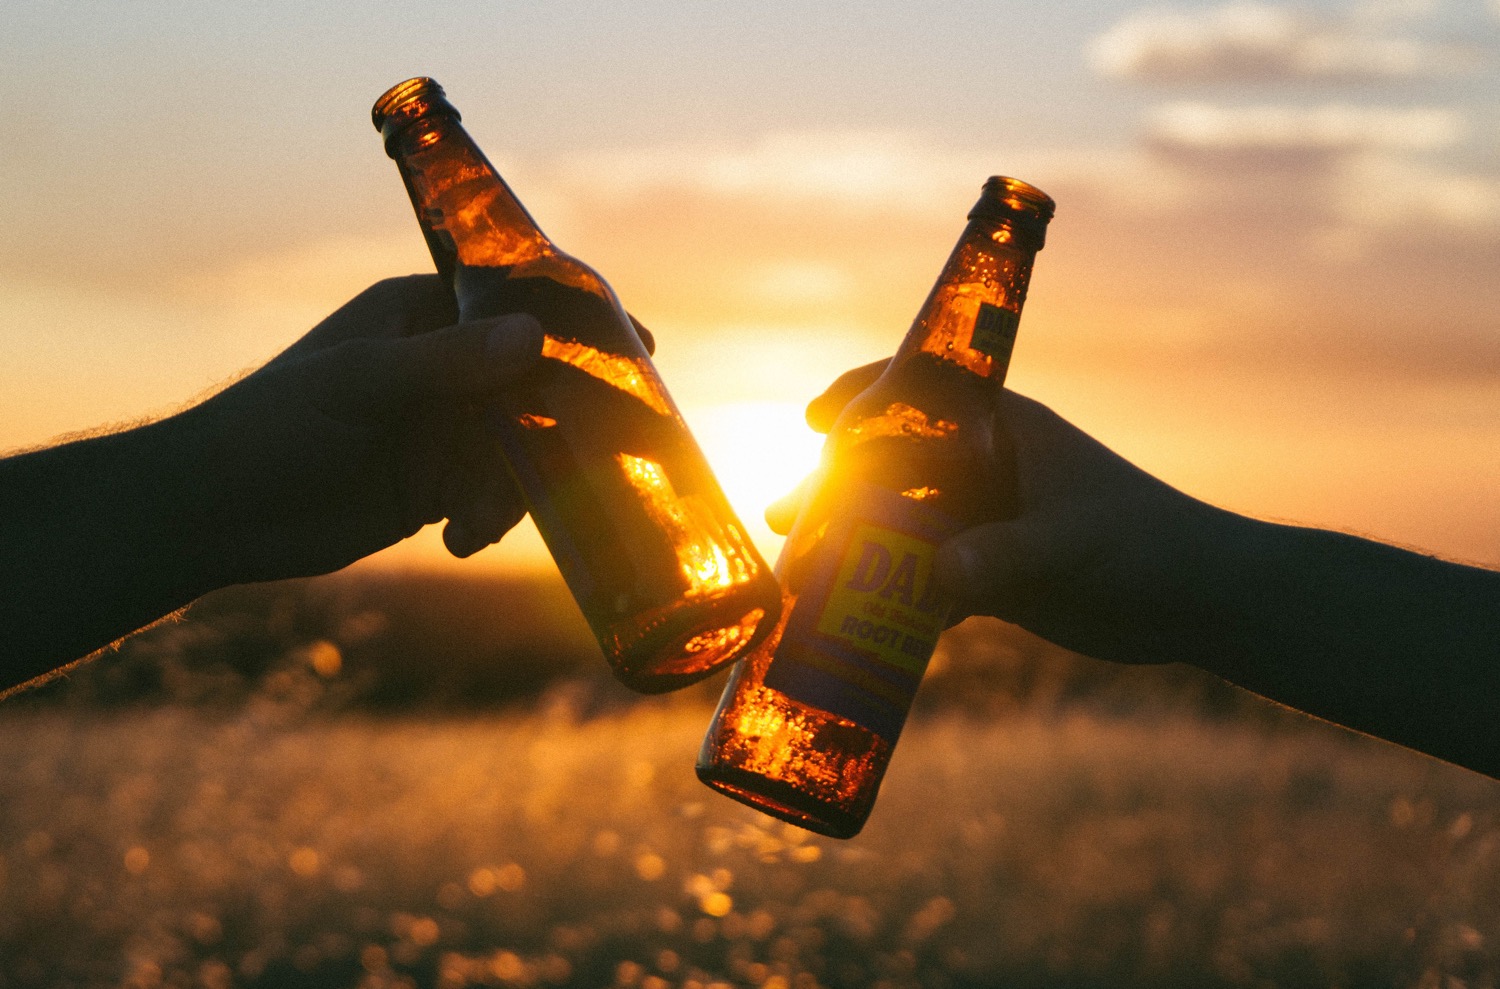 Beer With Me: Digitales Anstoßen in Zeiten von Corona